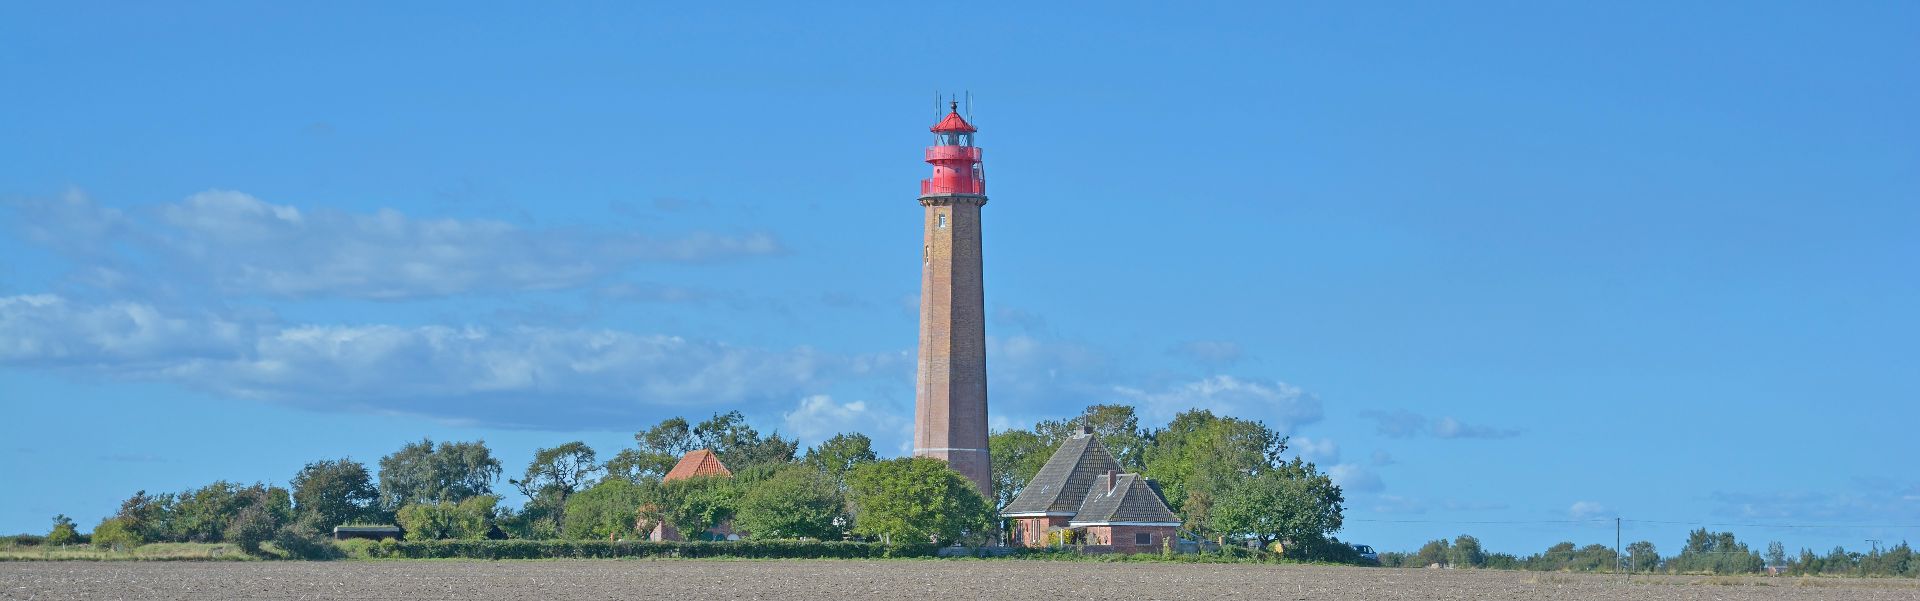 Leuchtturm von Flügge auf der Insel Fehmarn